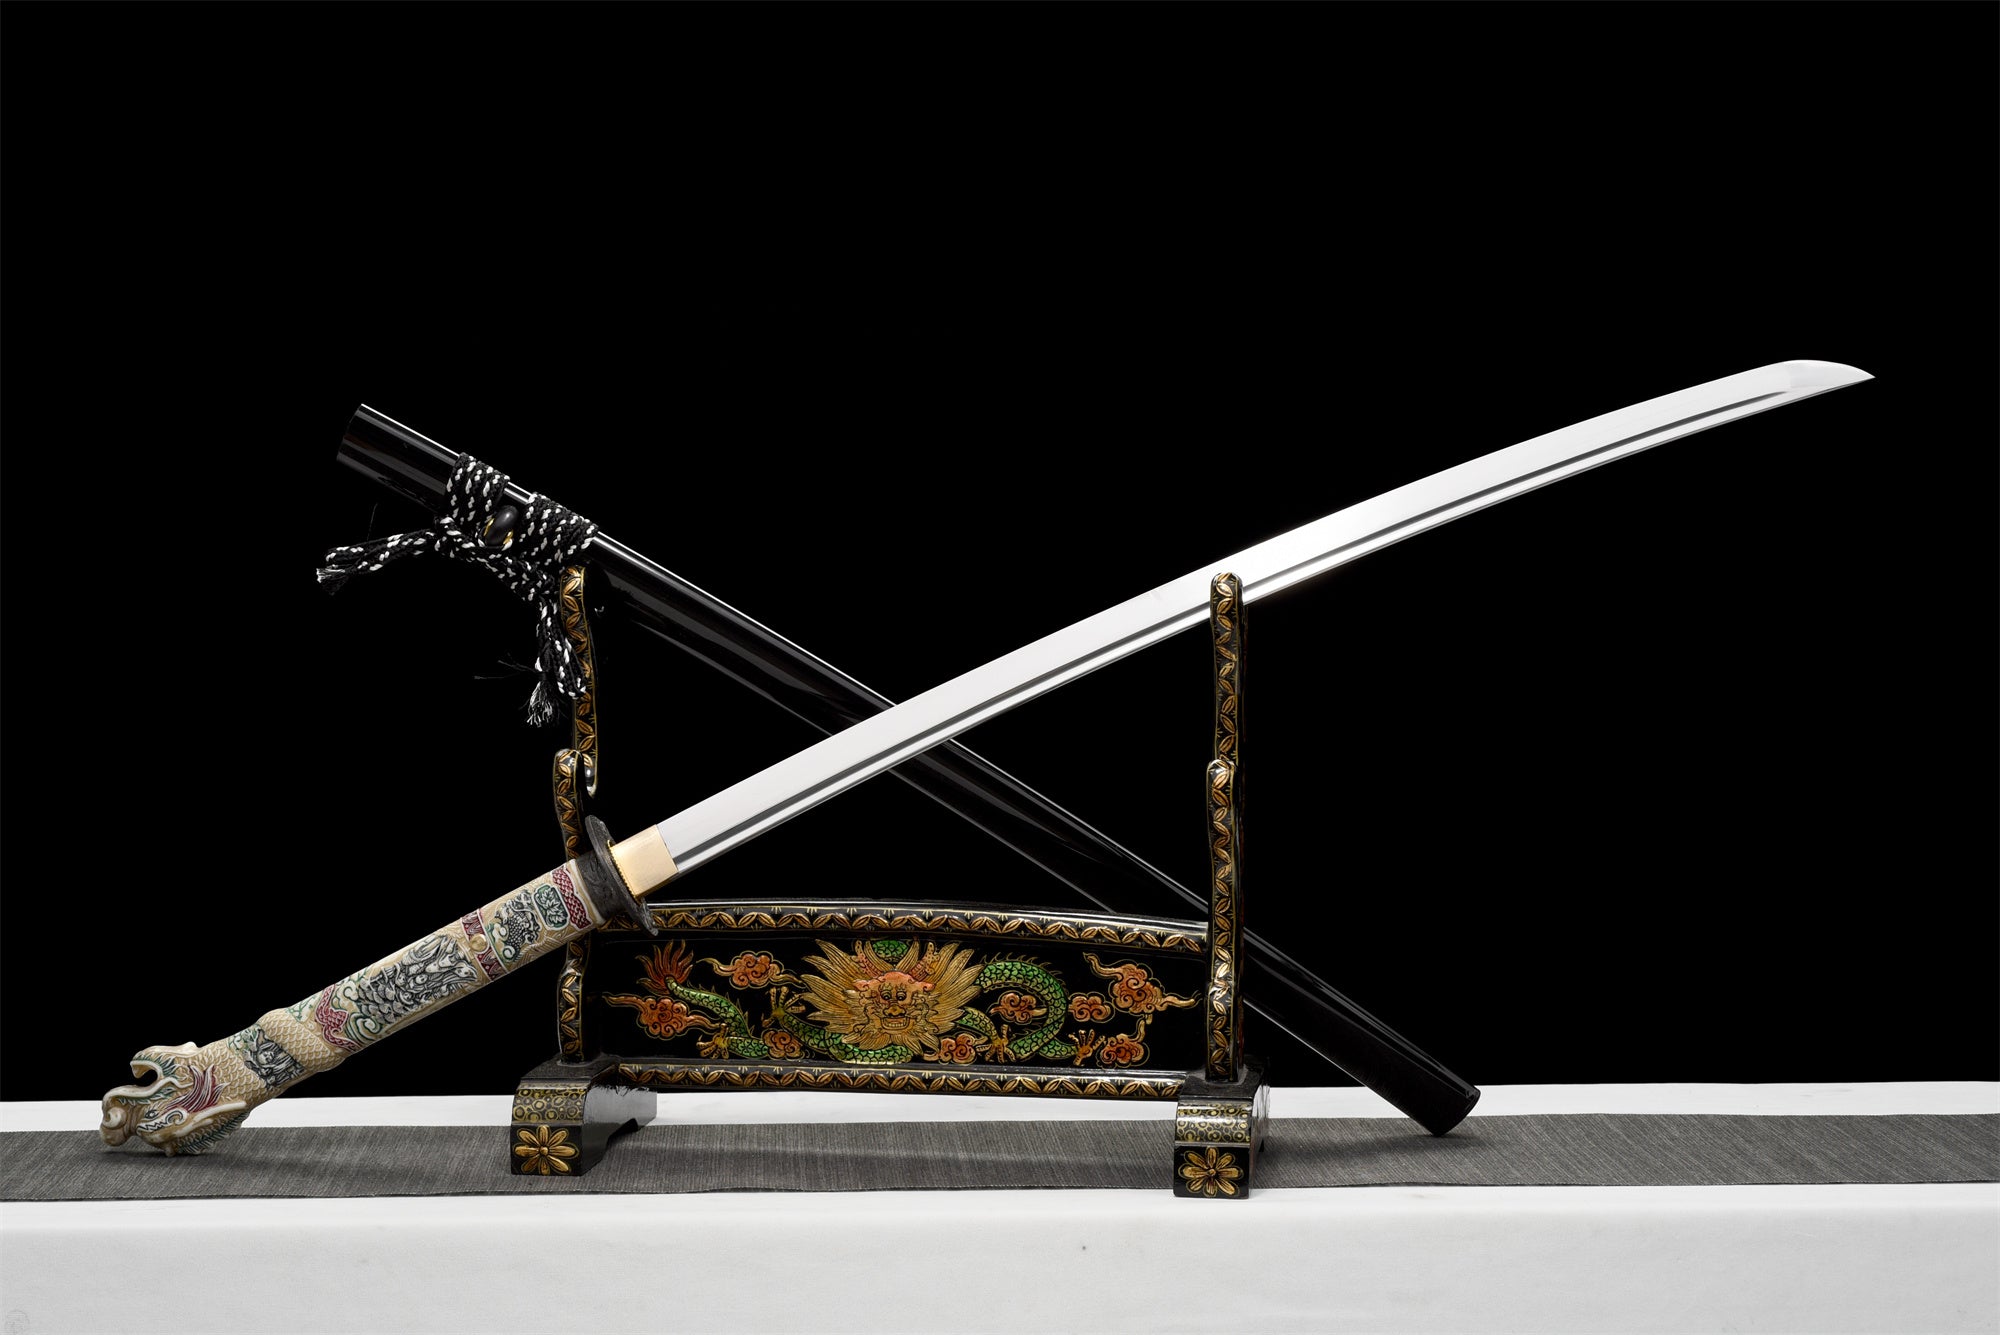 Dragon Head Katana,Japanese Samurai Sword,Dragonhead Katana,Real Handmade Katana,High manganese steel